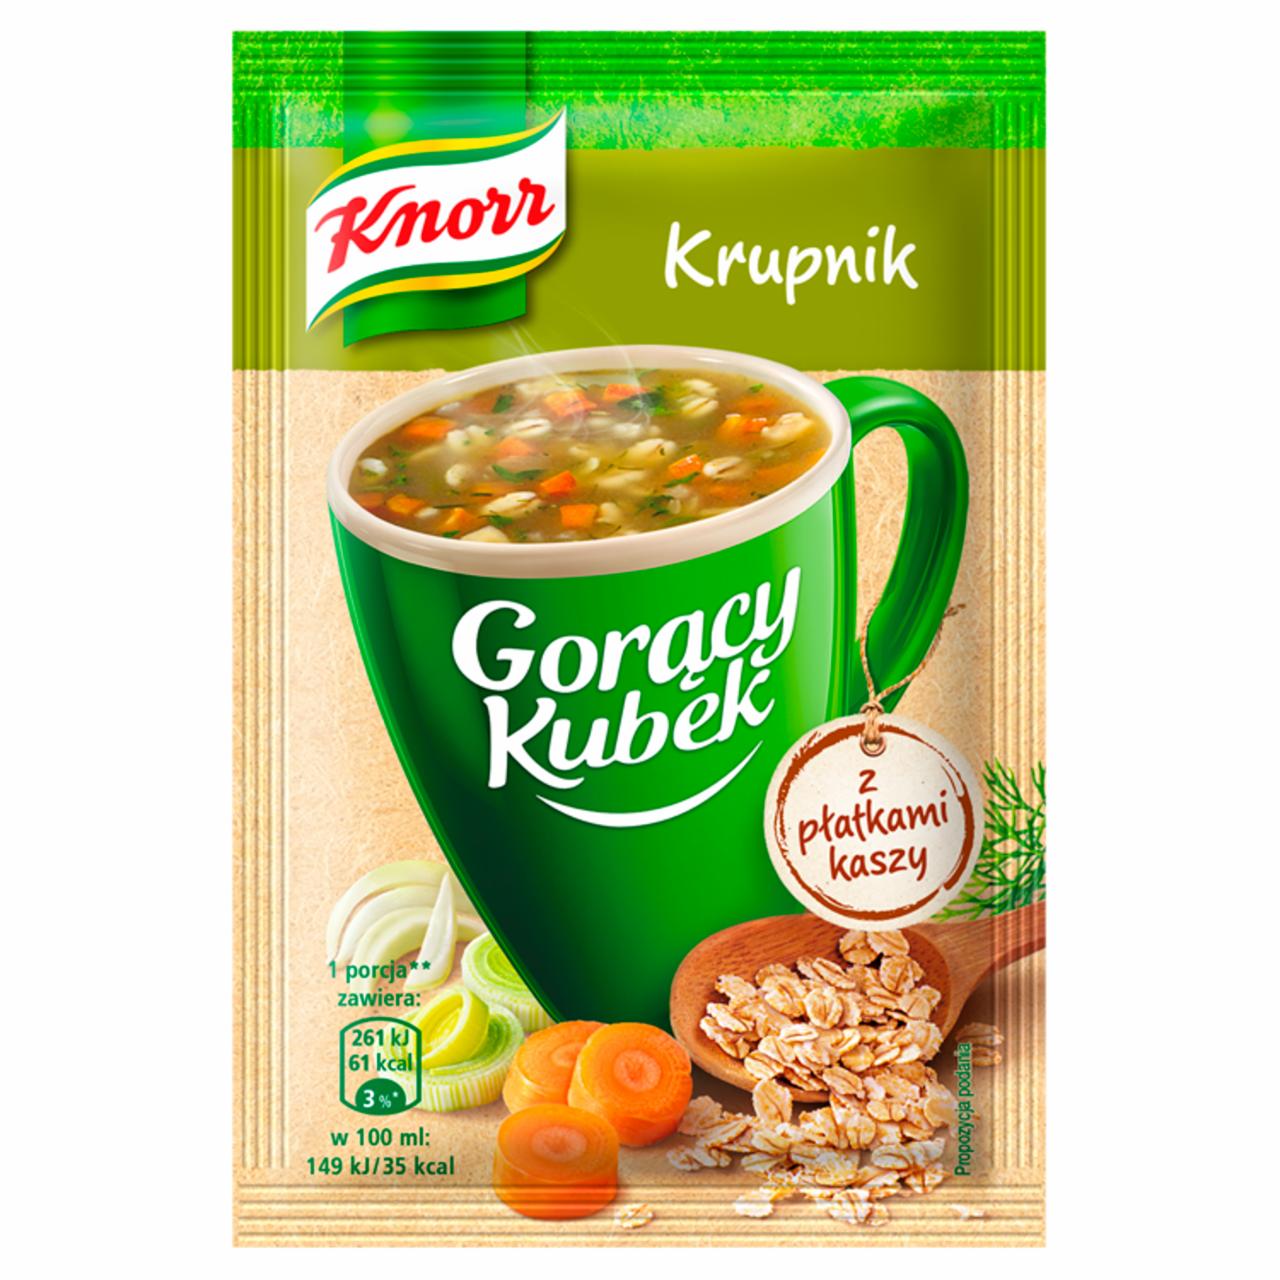 Zdjęcia - Knorr Gorący Kubek Krupnik z płatkami kaszy 18 g